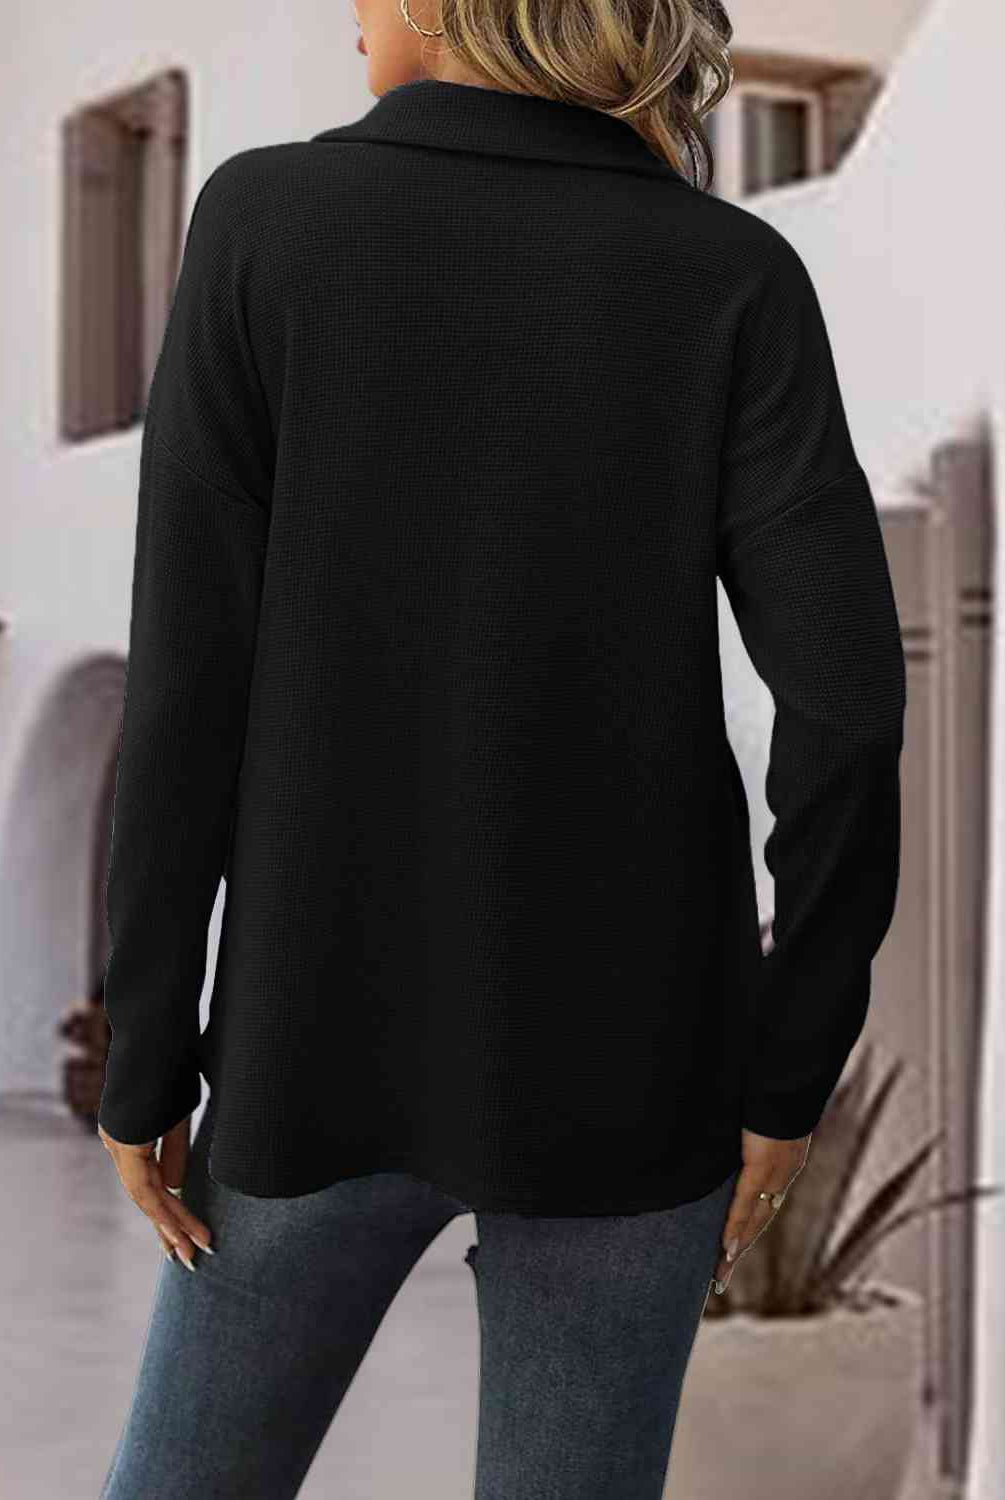 10.3 Half-Zip Drop Shoulder Sweatshirt - GemThreads Boutique